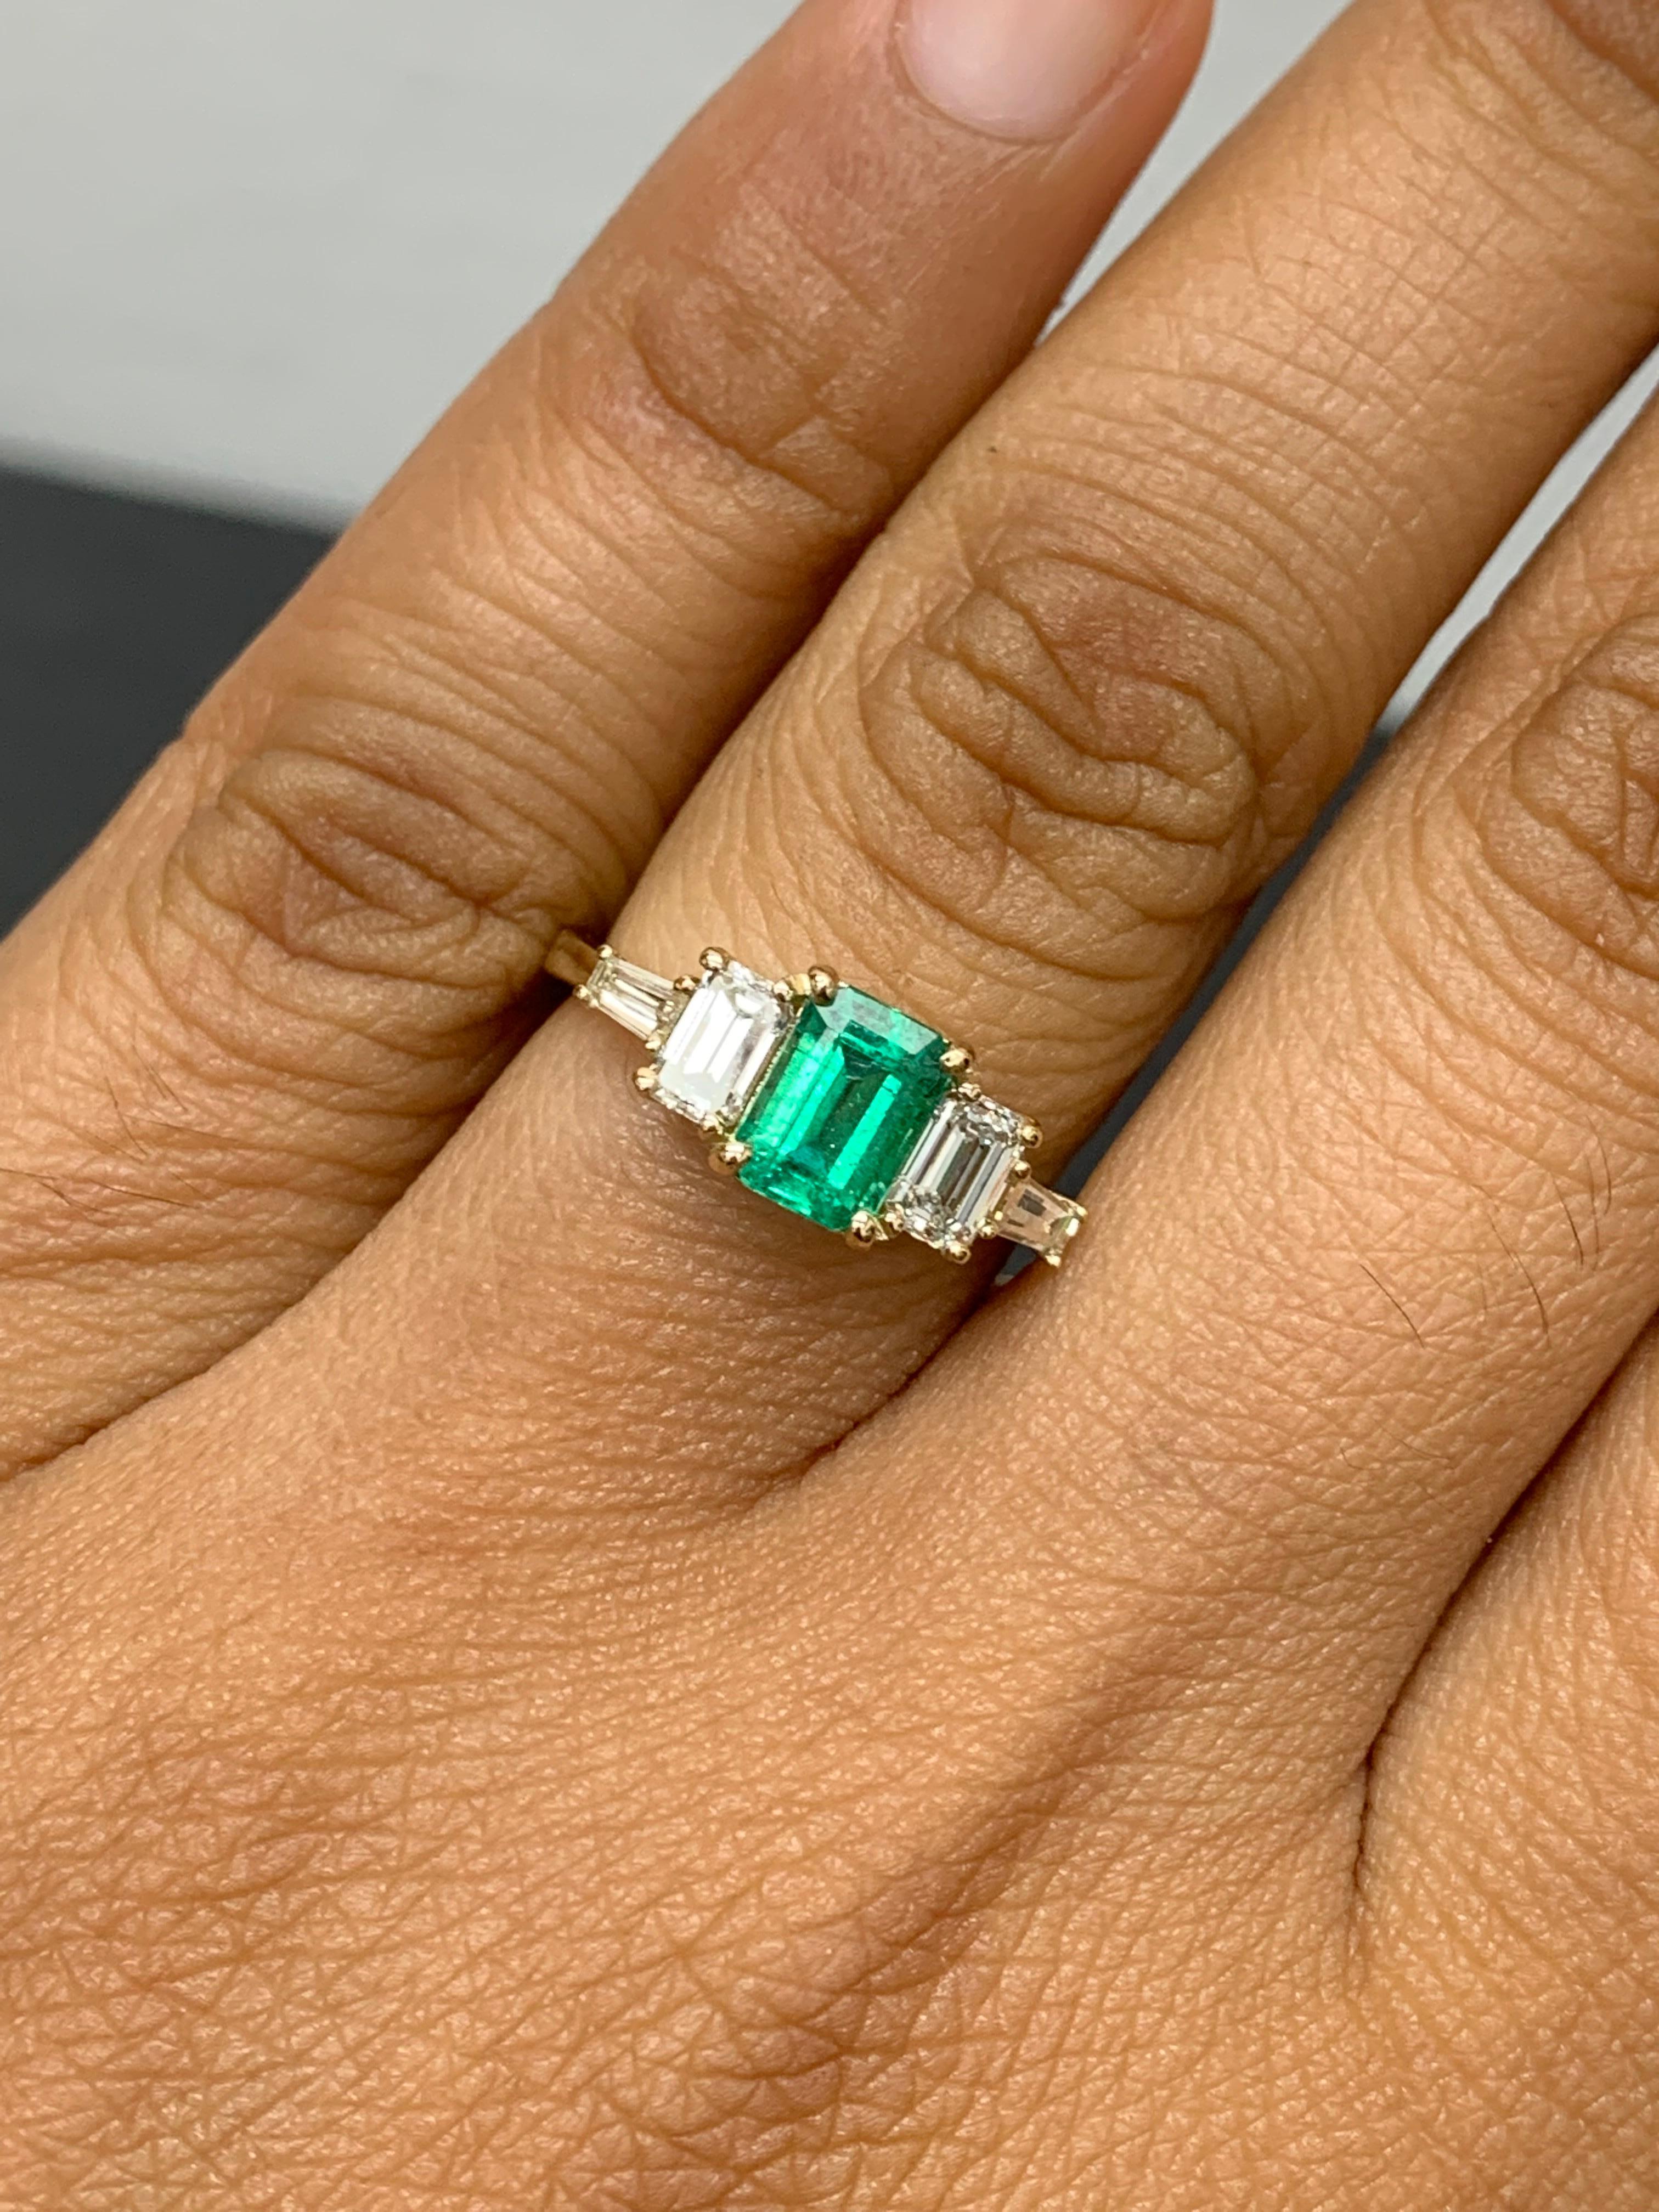 Cette magnifique bague est ornée d'une riche émeraude d'un vert luxuriant intense pesant 0,72 carats.  La pierre centrale est flanquée de deux diamants de taille émeraude pesant 0,64 carat et de deux diamants baguette de chaque côté pesant 0,21